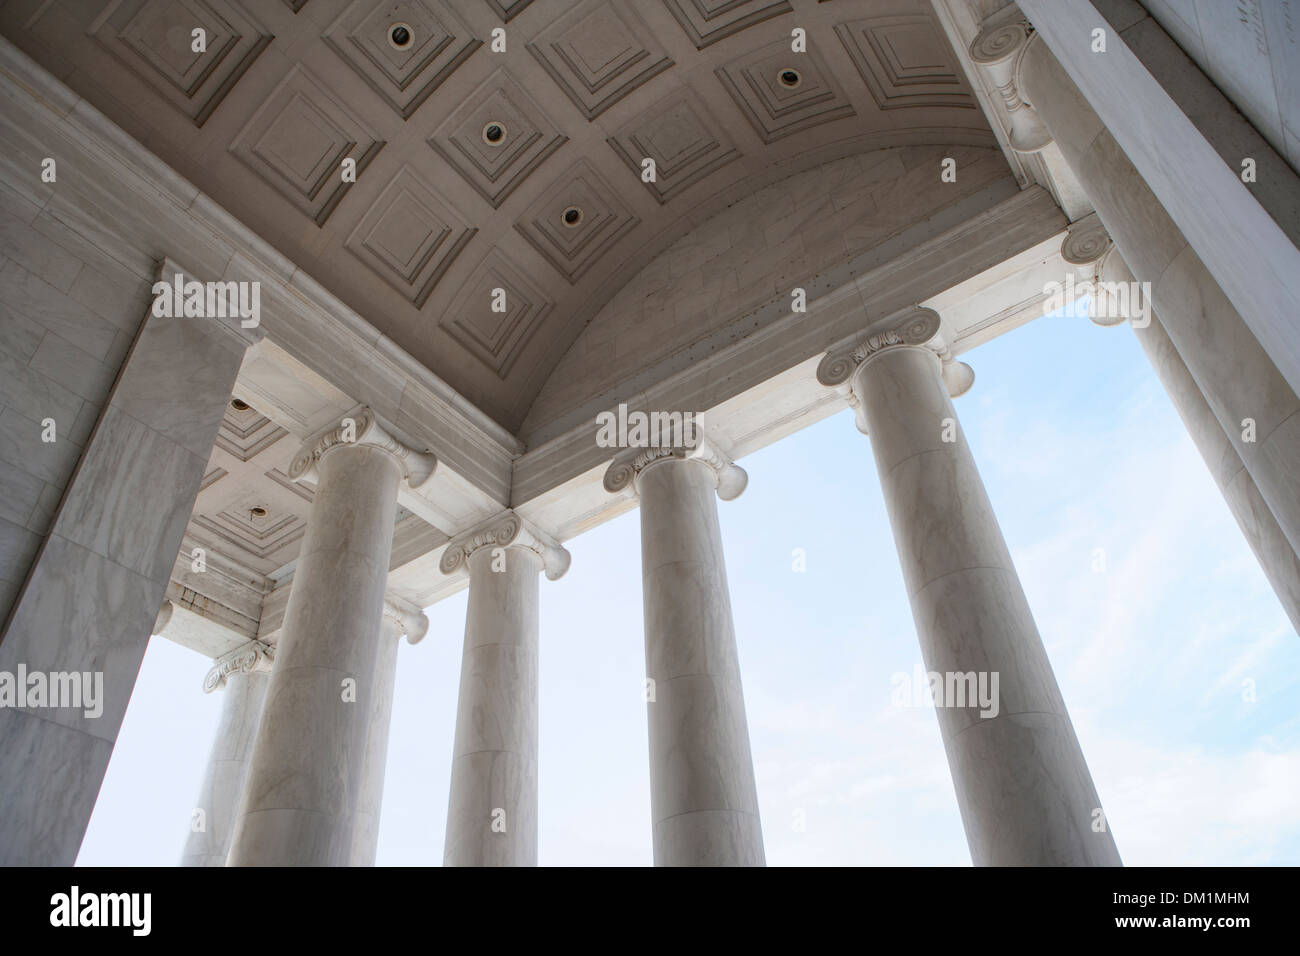 Classic di colonne di marmo come si vede in questo colpo di Jefferson Memorial di Washington DC. Foto Stock